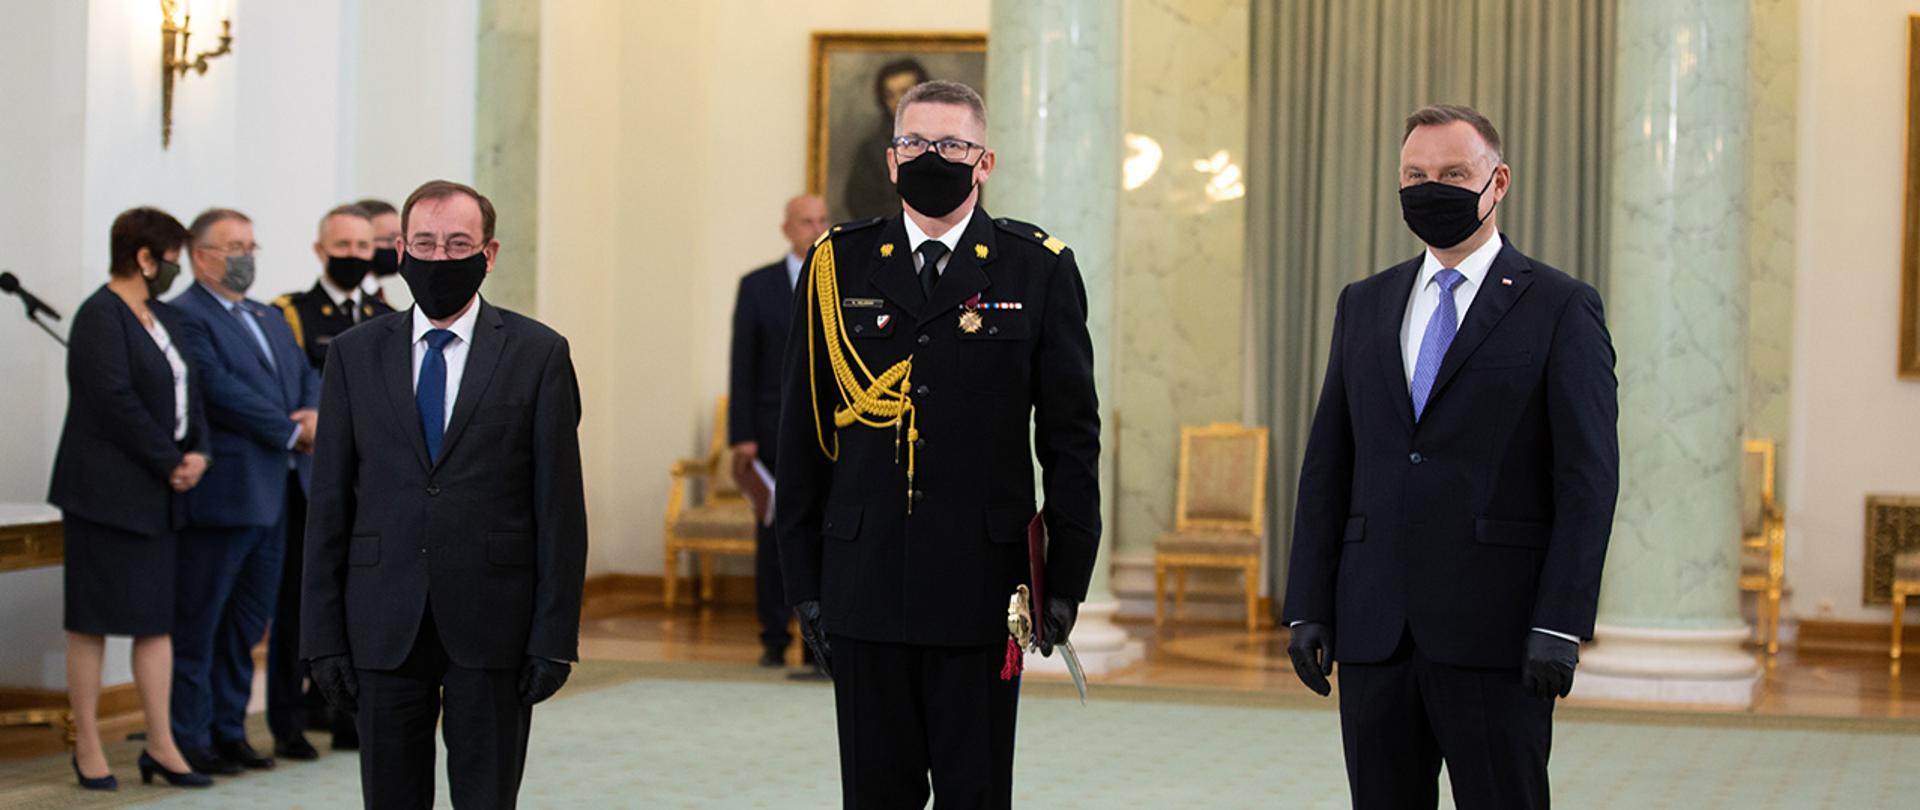 Na zdjęciu: Prezydent RP Andrzej Duda, minister Mariusz Kamiński oraz nadbrygadier Krzysztof Hejduk 